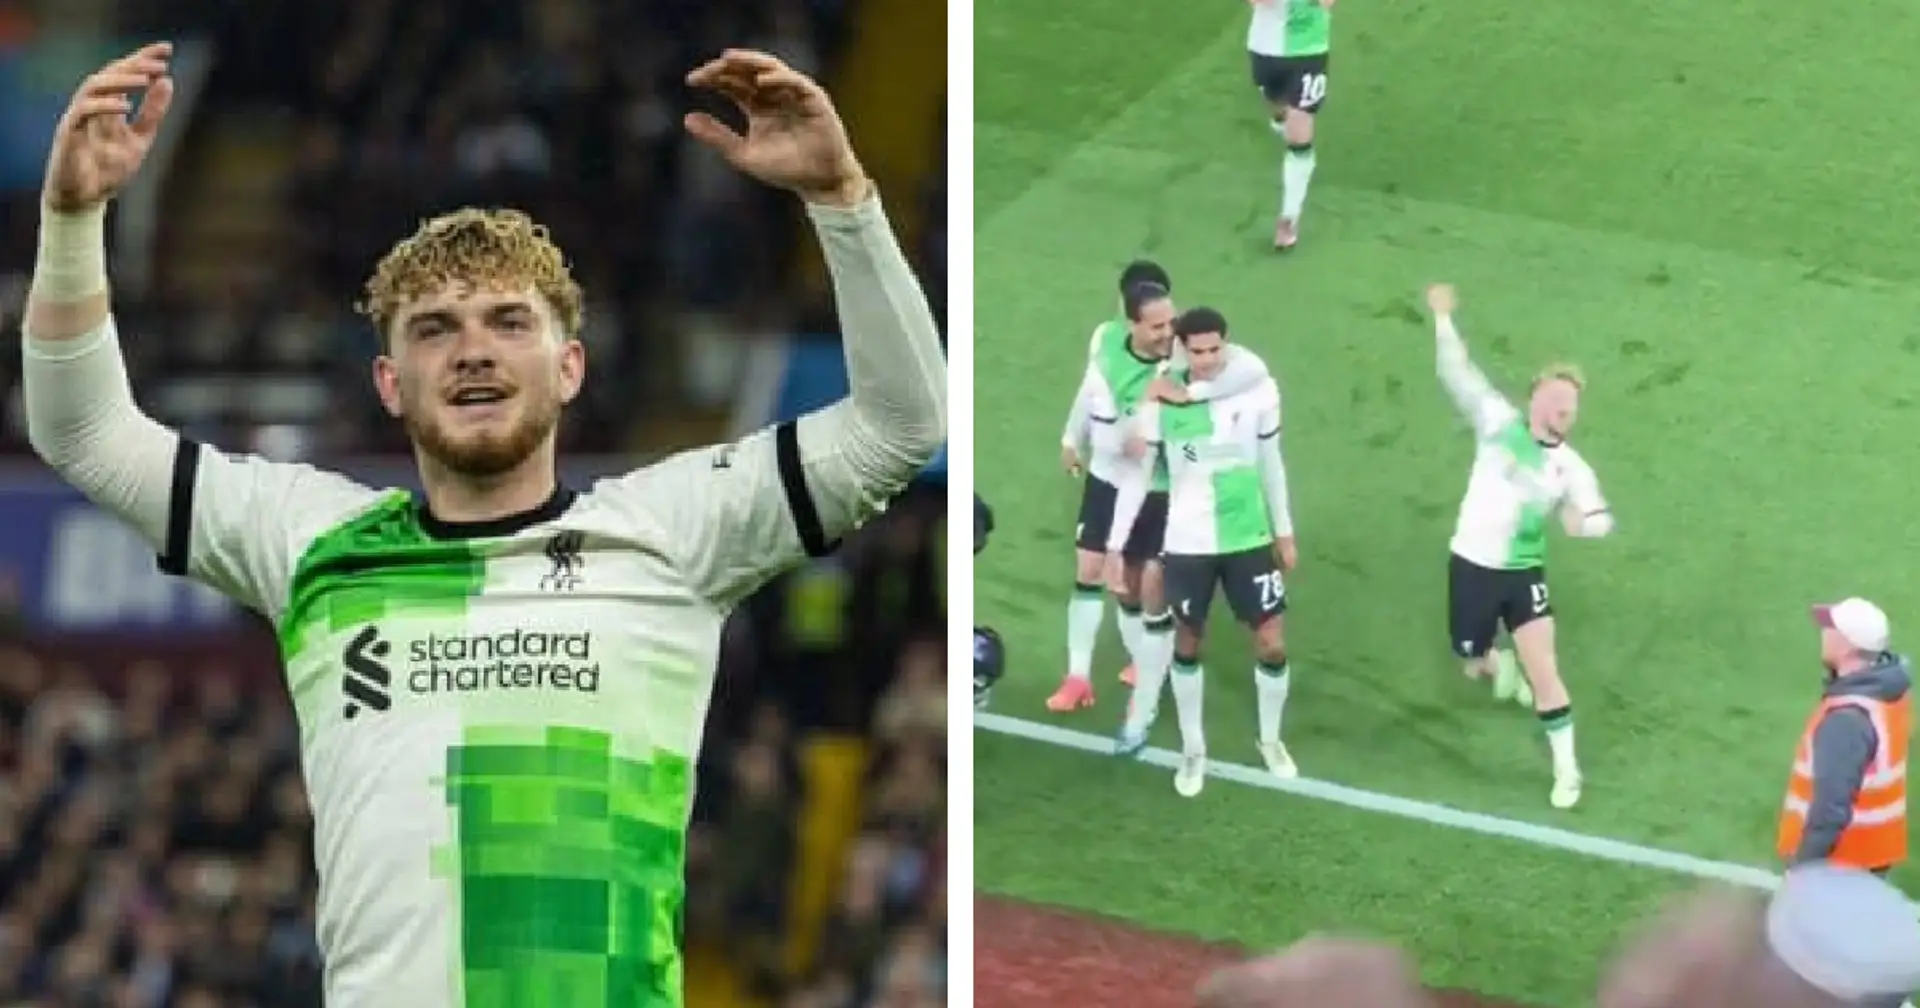 Spotted: Elliott's passionate celebration for Quansah's first Premier League goal